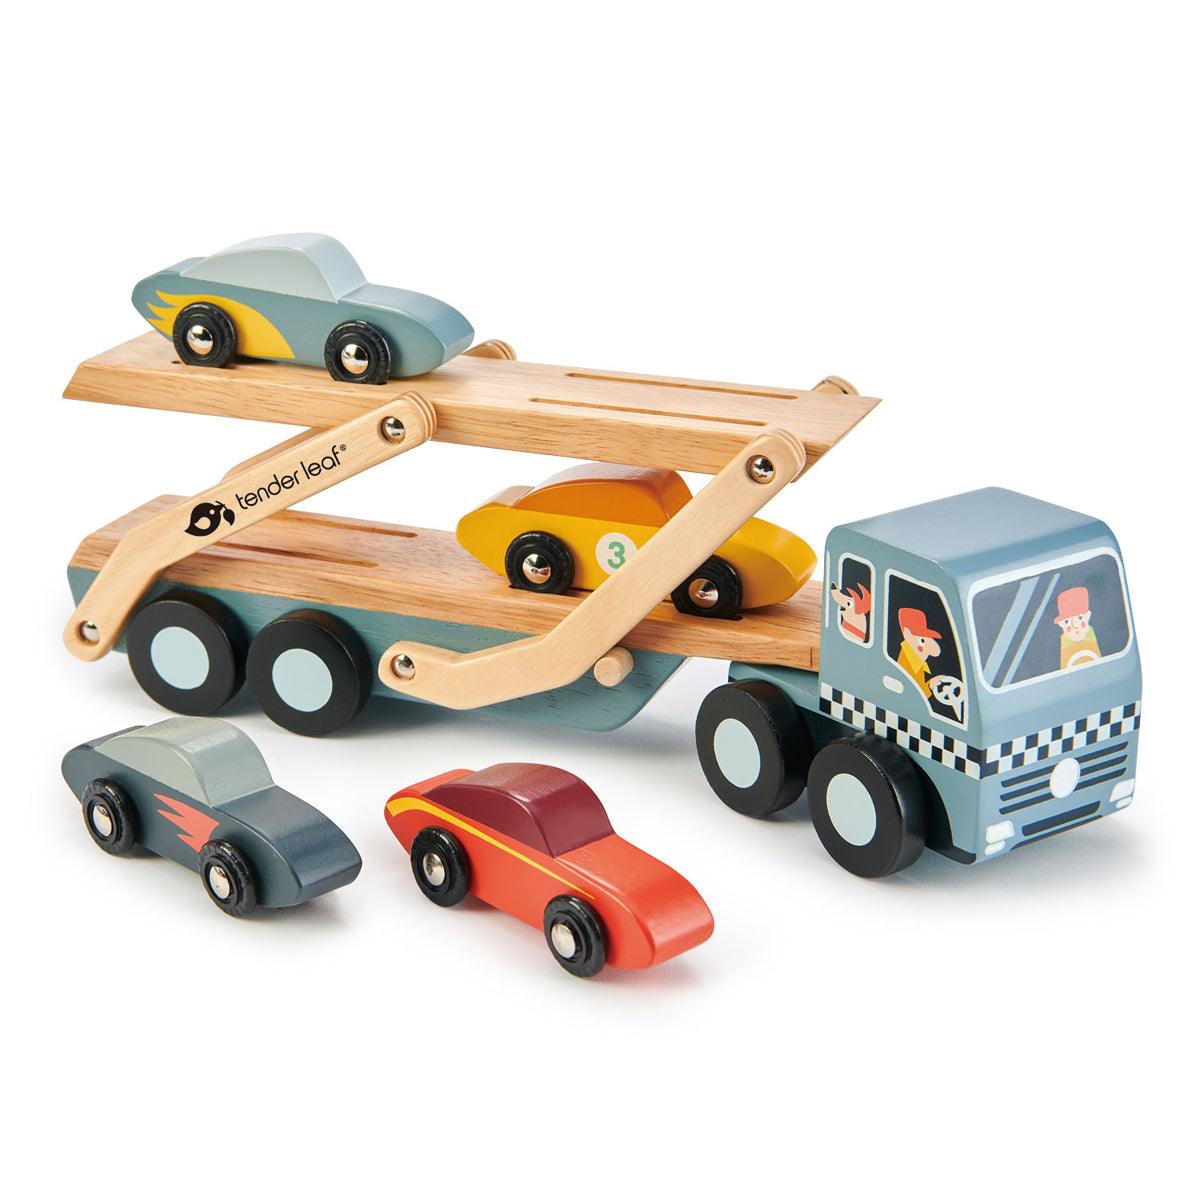 Nježne lišće igračke: drvena prikolica s automobilskim transporterom automobila